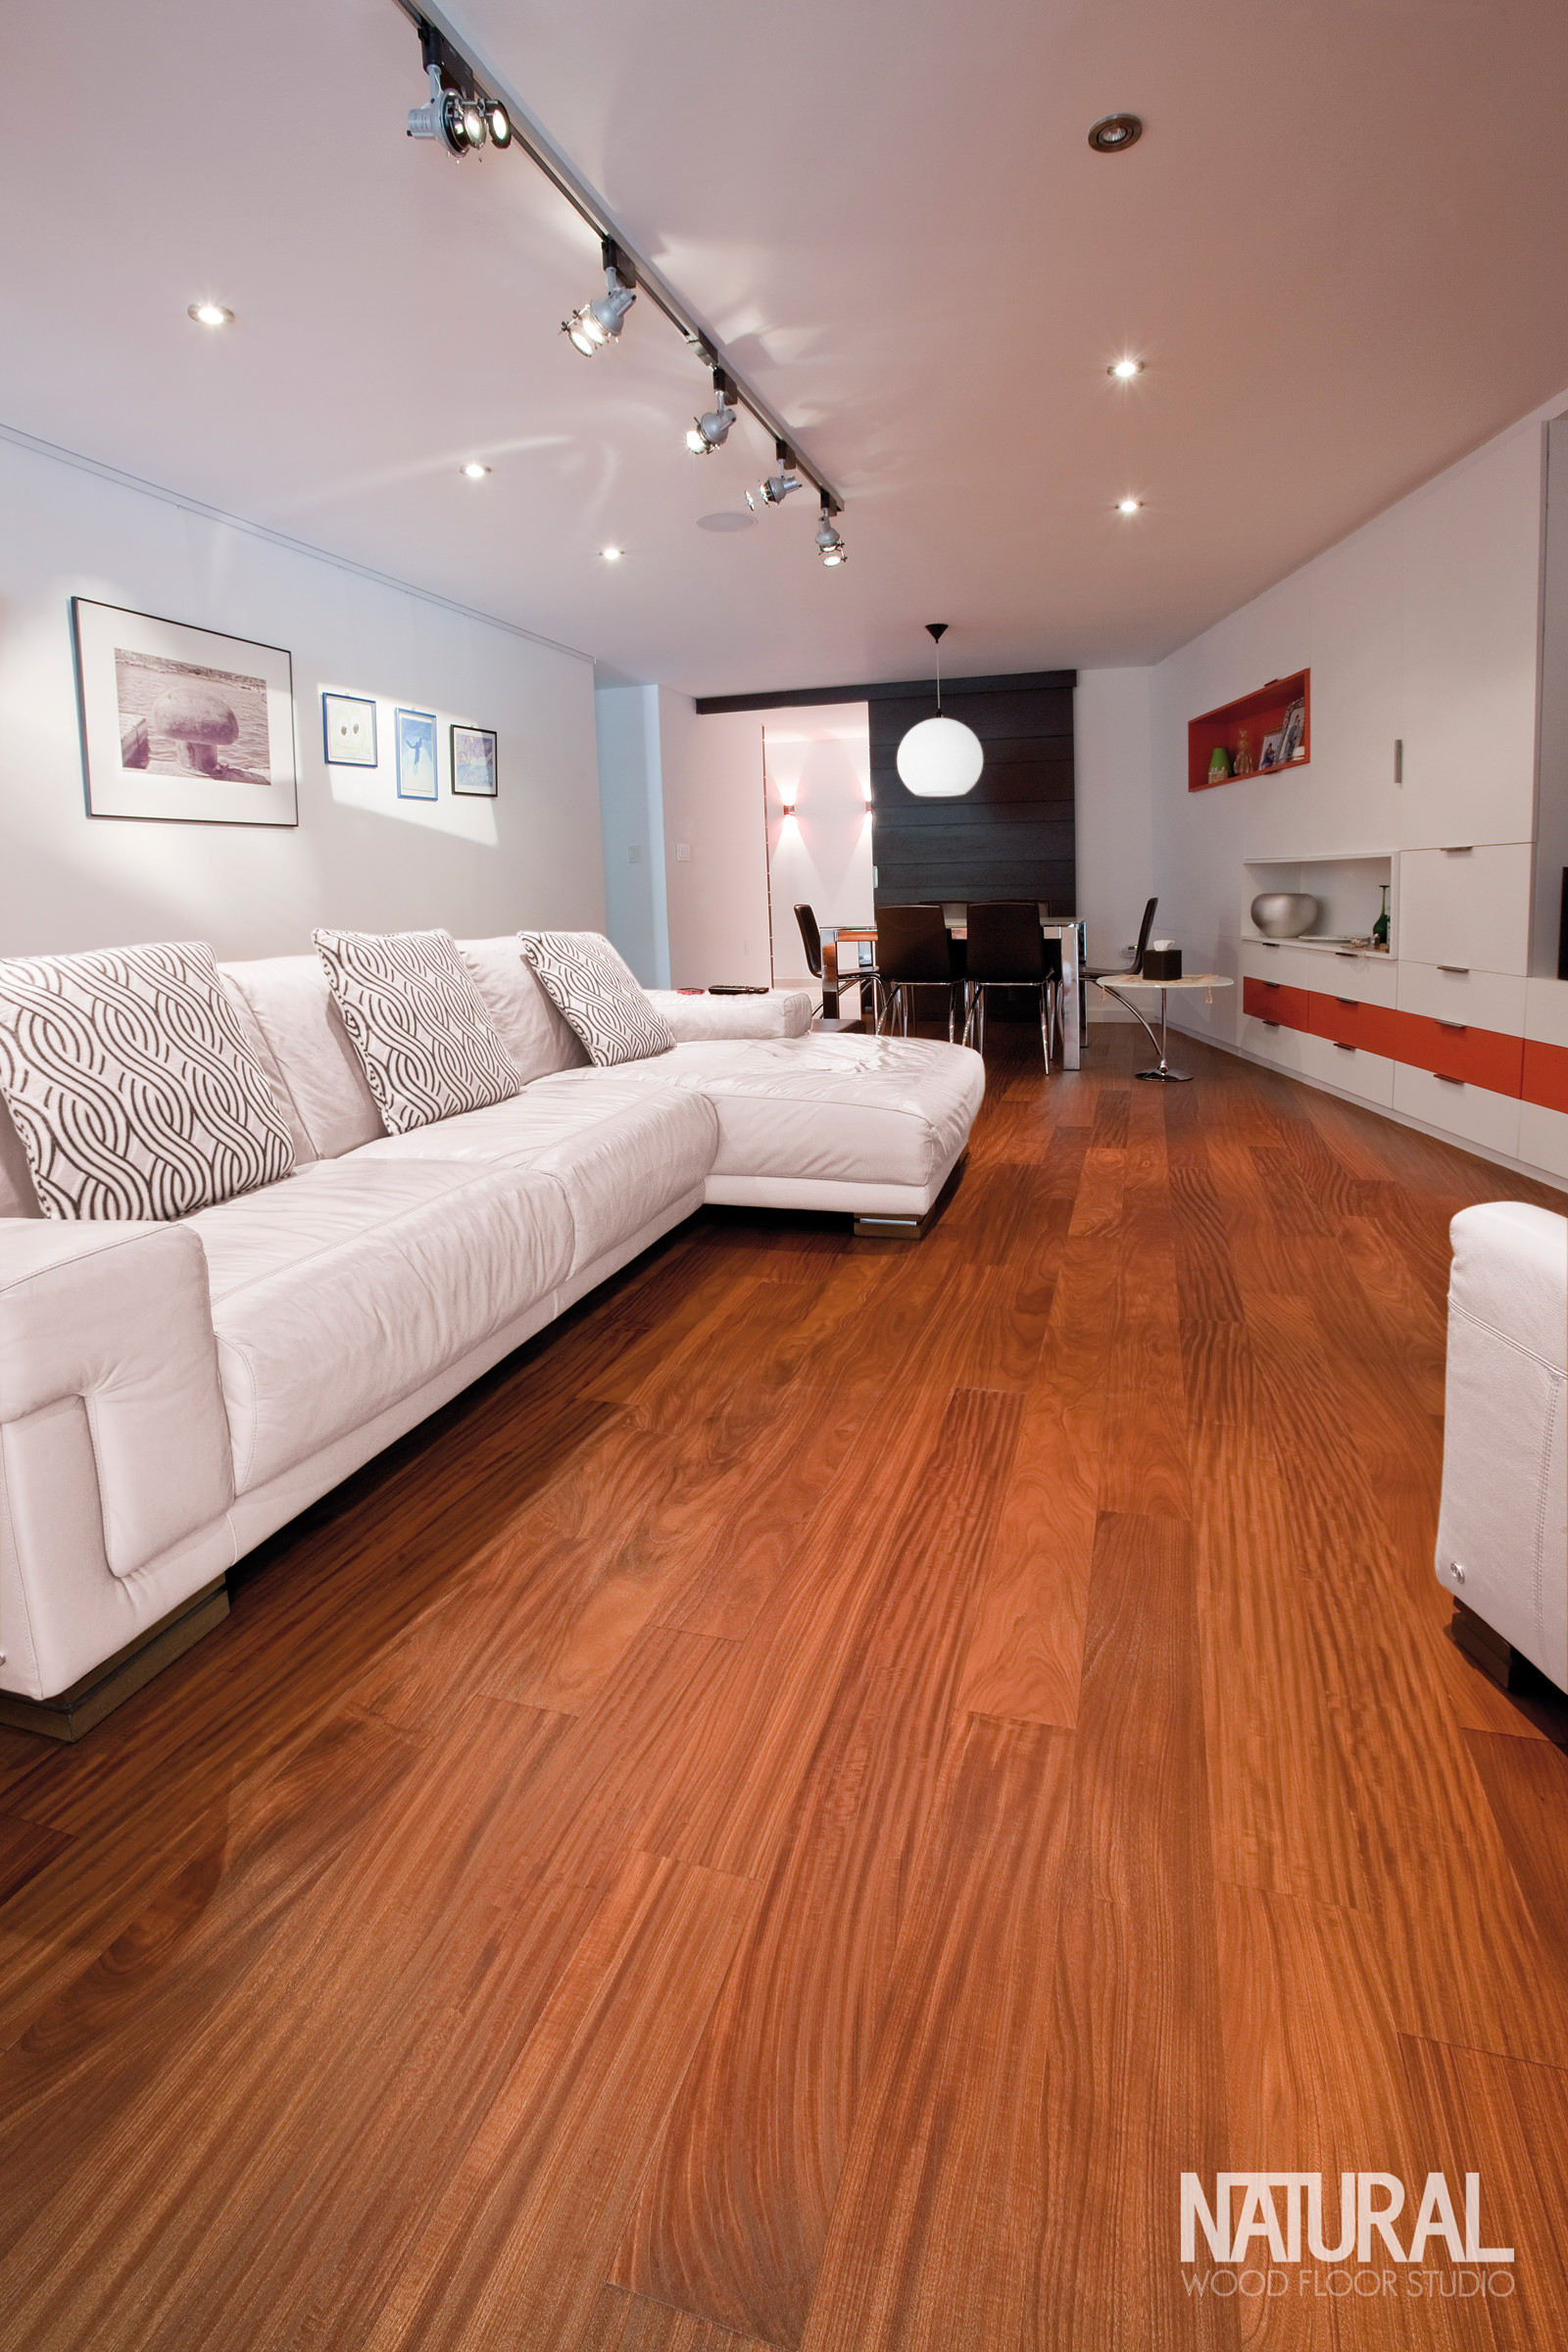 16 Great Hardwood Floor Repair Companies 2024 free download hardwood floor repair companies of natural wood floor studio the fine art of wood floors for design